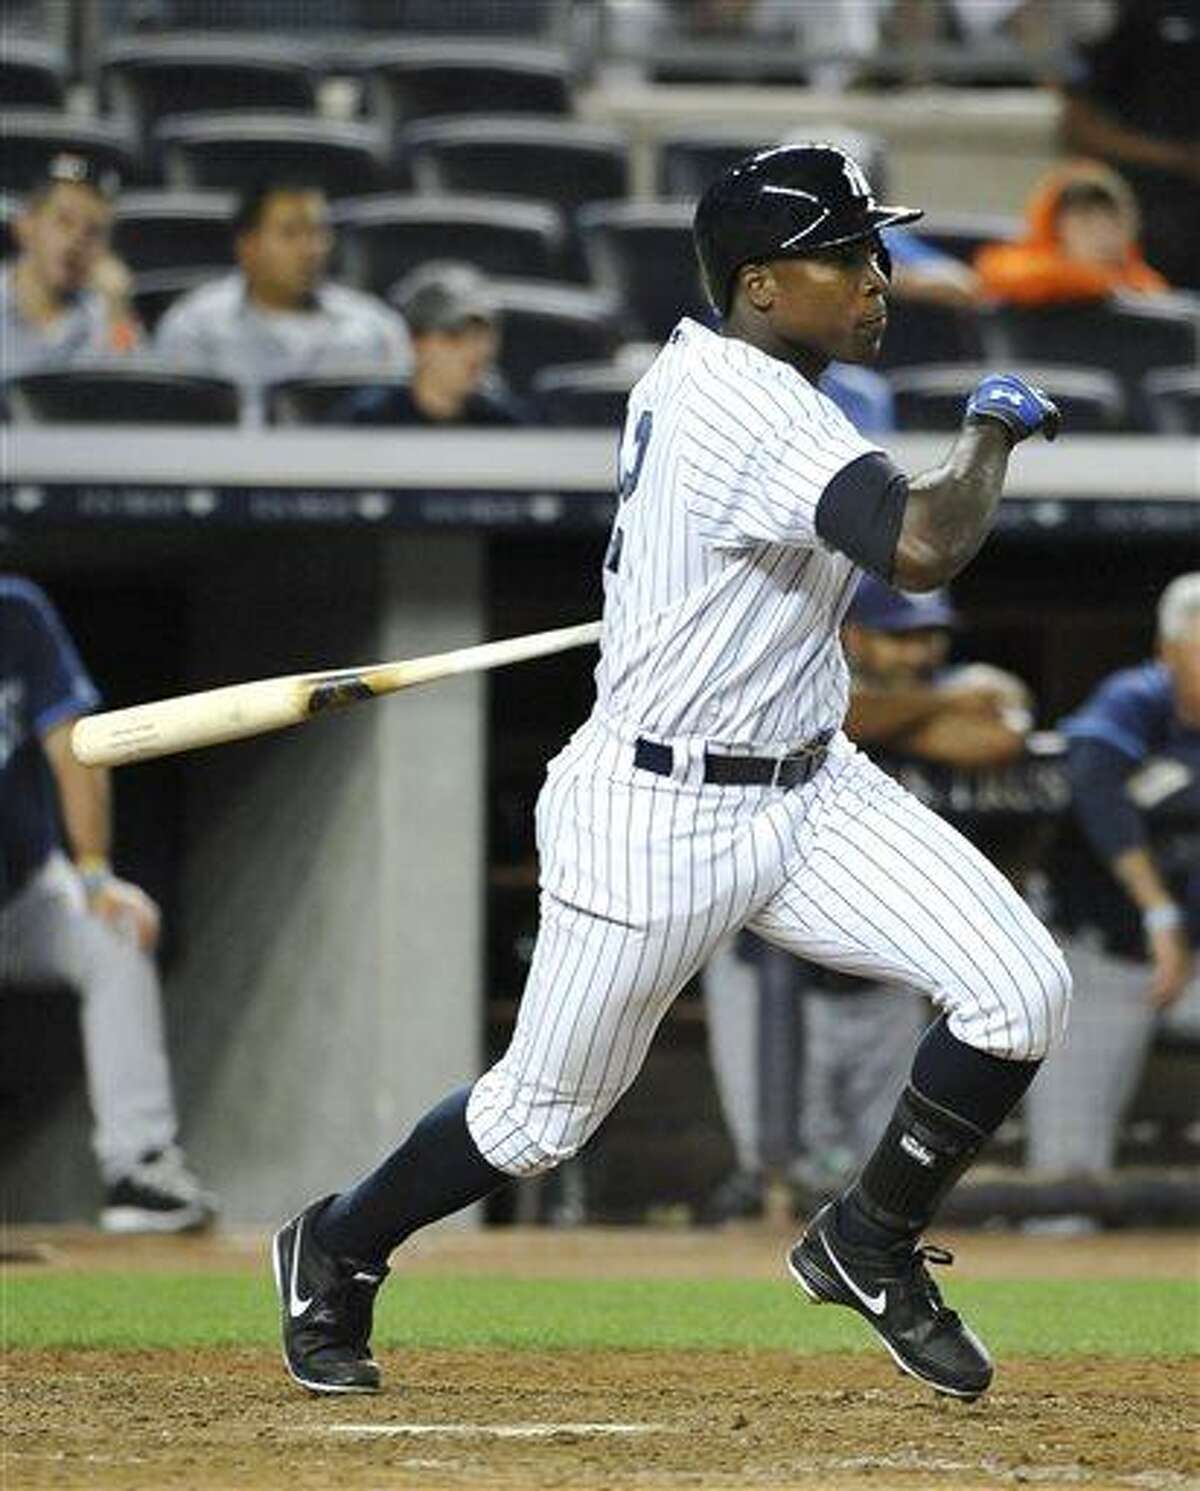 Baseball season starts Friday night for Yankees, who bring back Alfonso  Soriano (photos) 